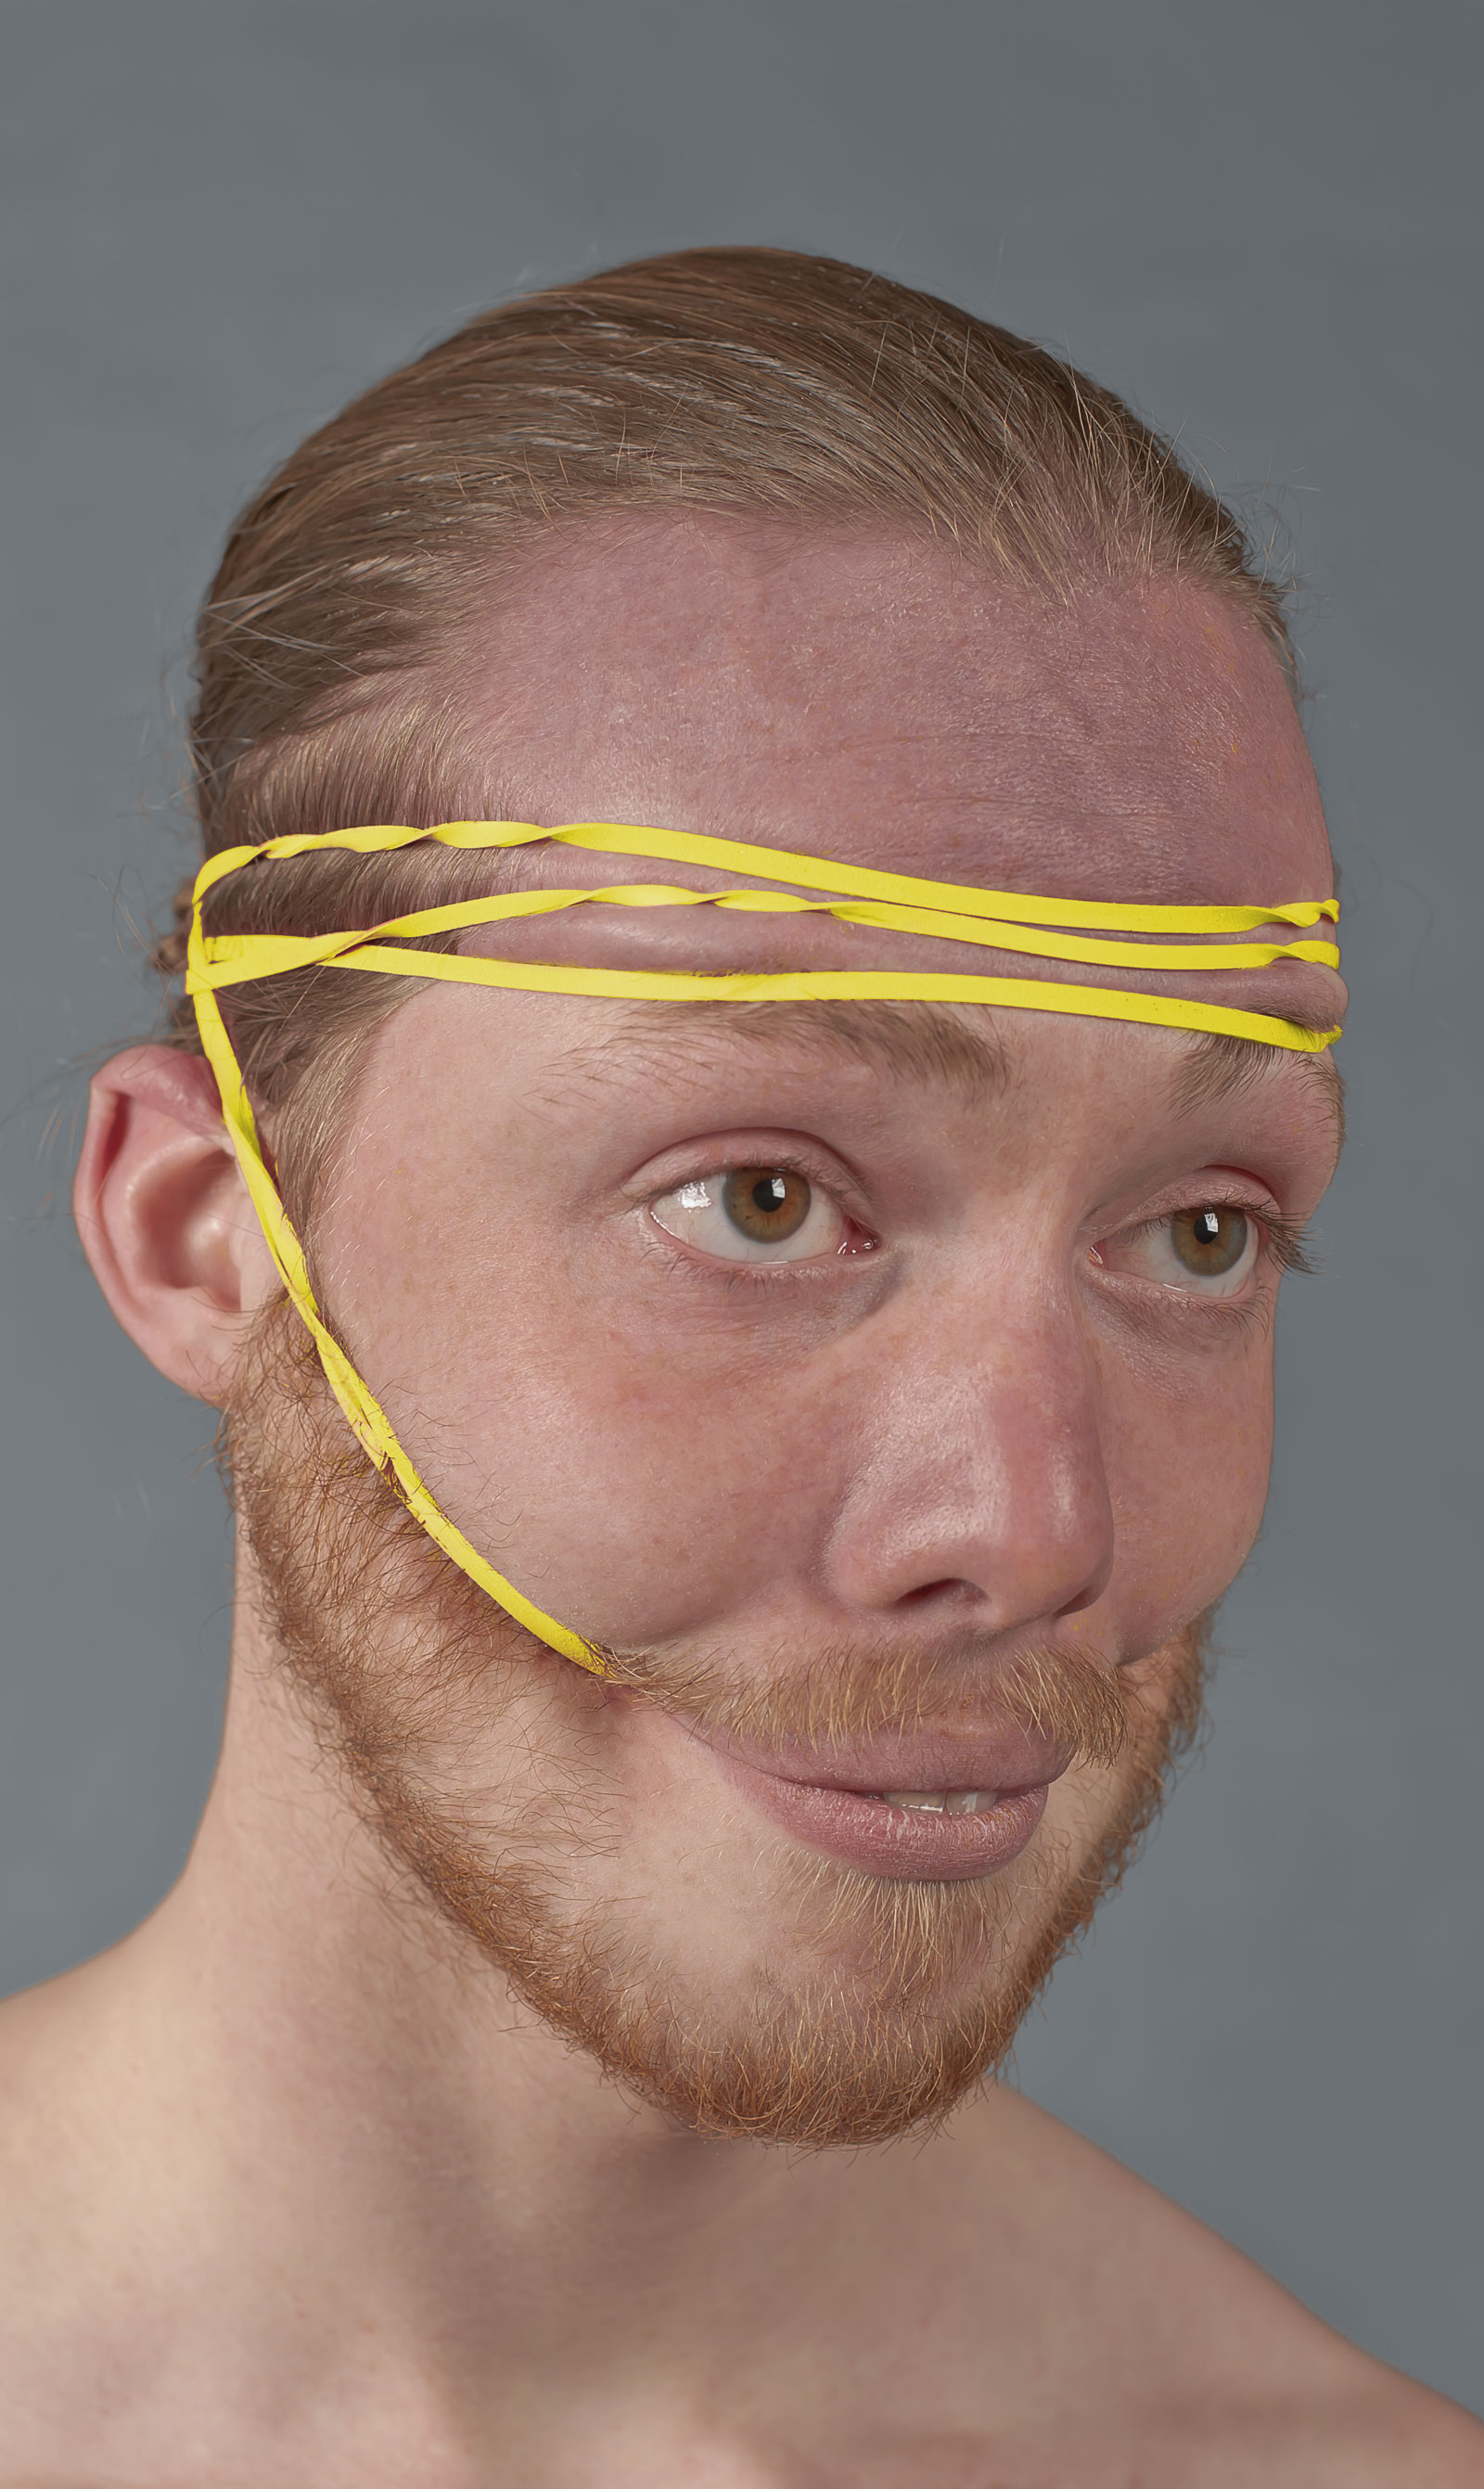 Portret met gele elastieken om het gezicht in een lachende houding te fixeren